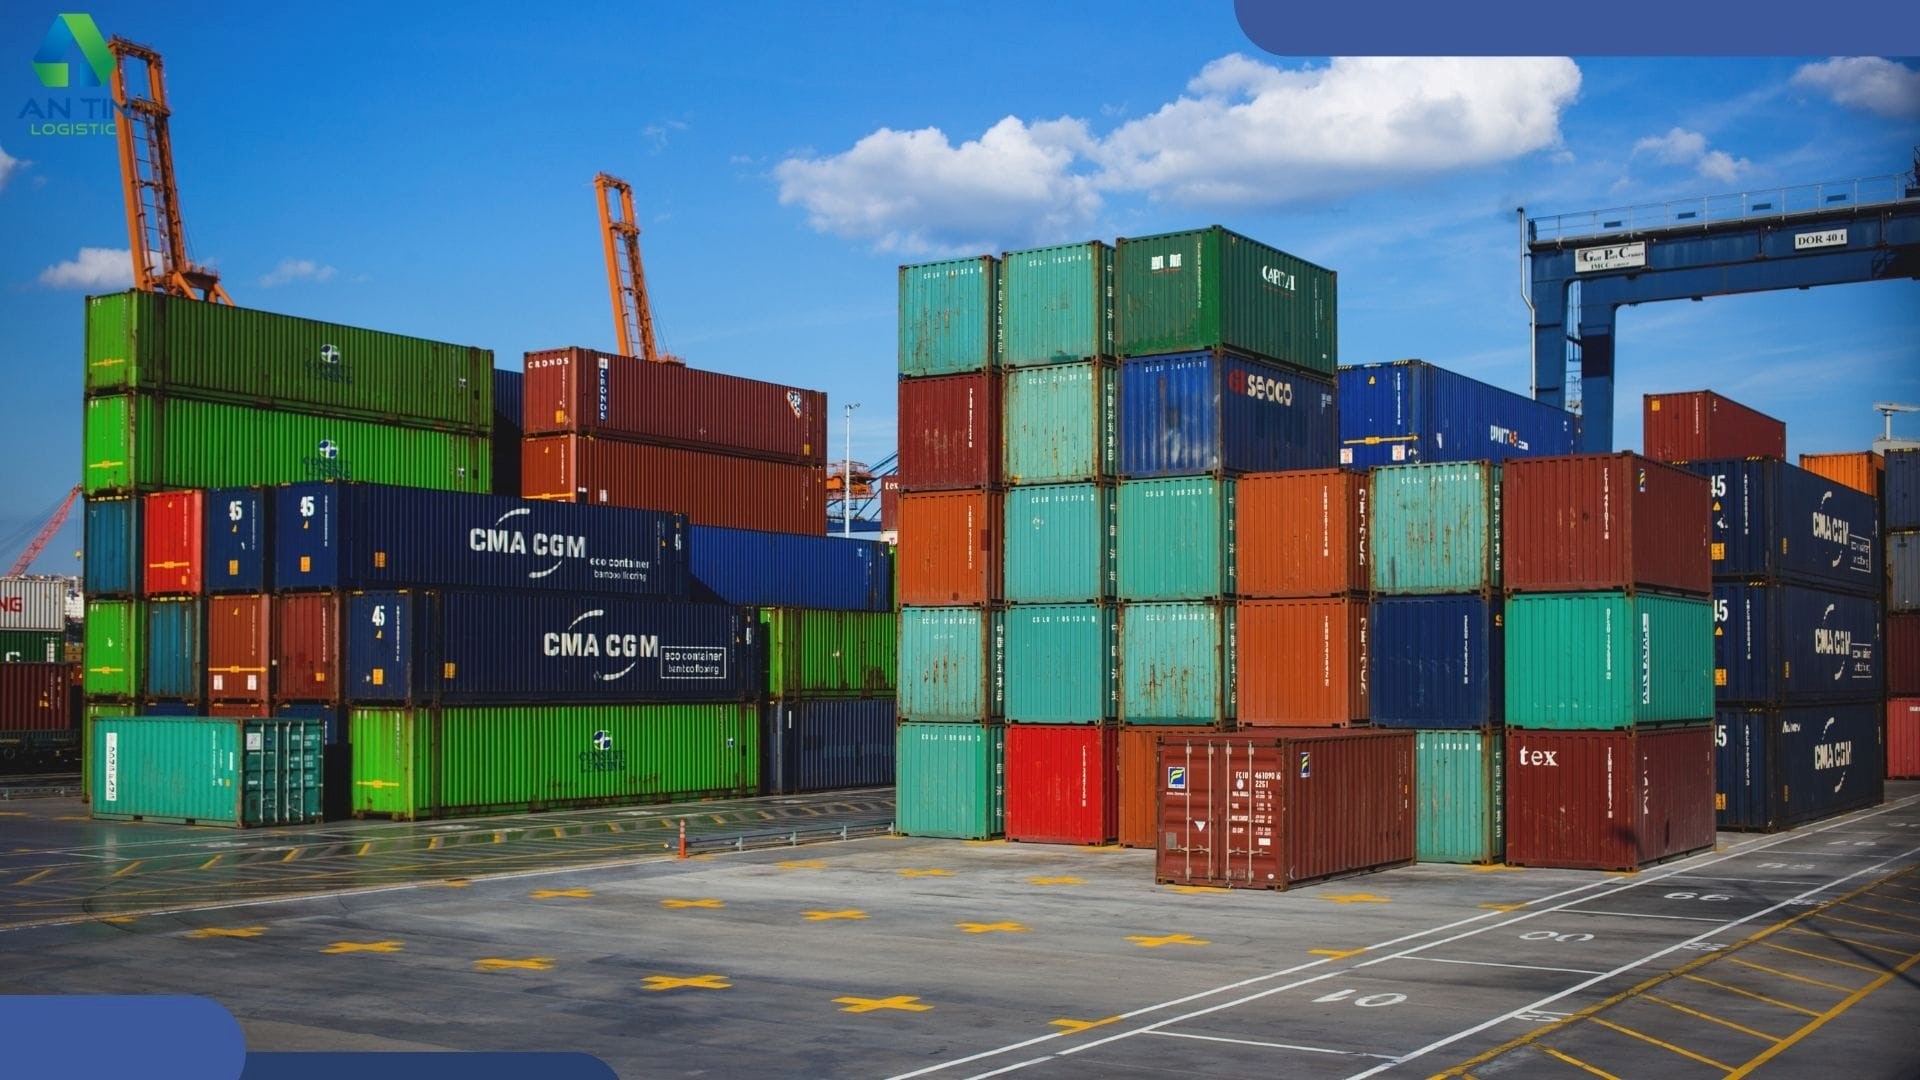 Hồ sơ hải quan đối với hoạt động xuất nhập khẩu hàng hóa tại chỗ bao gồm những gì?